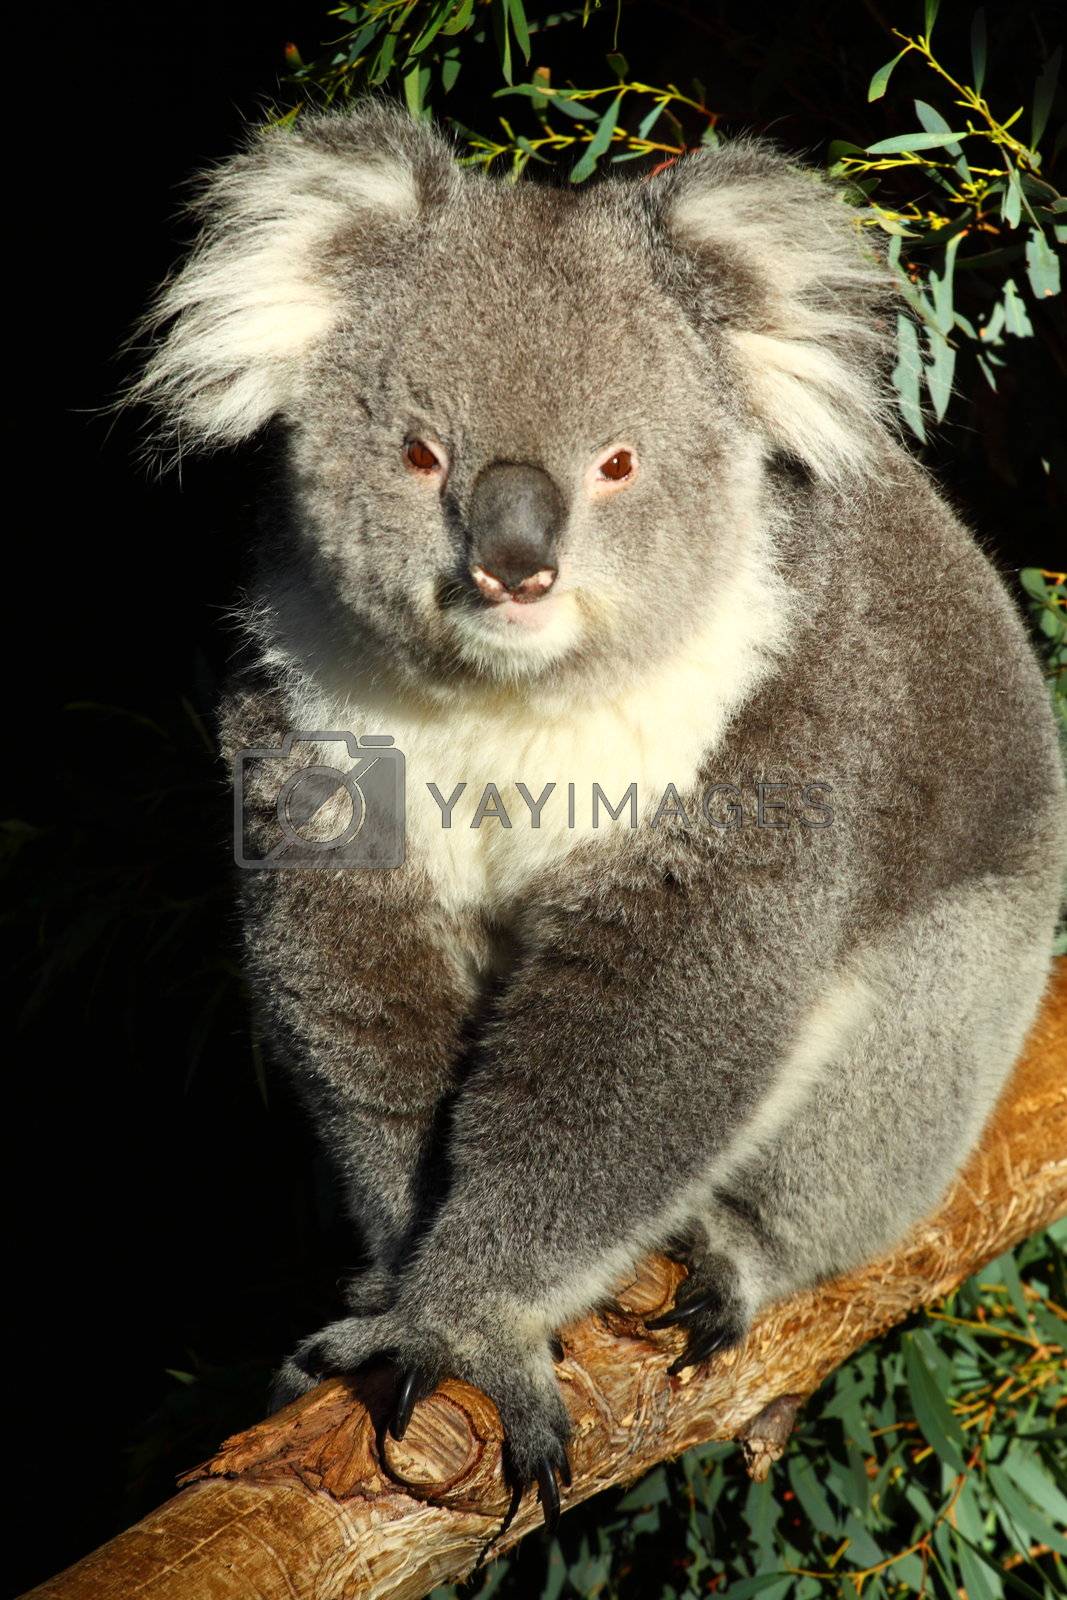 Royalty free image of Koala in Australia by mariusz_prusaczyk